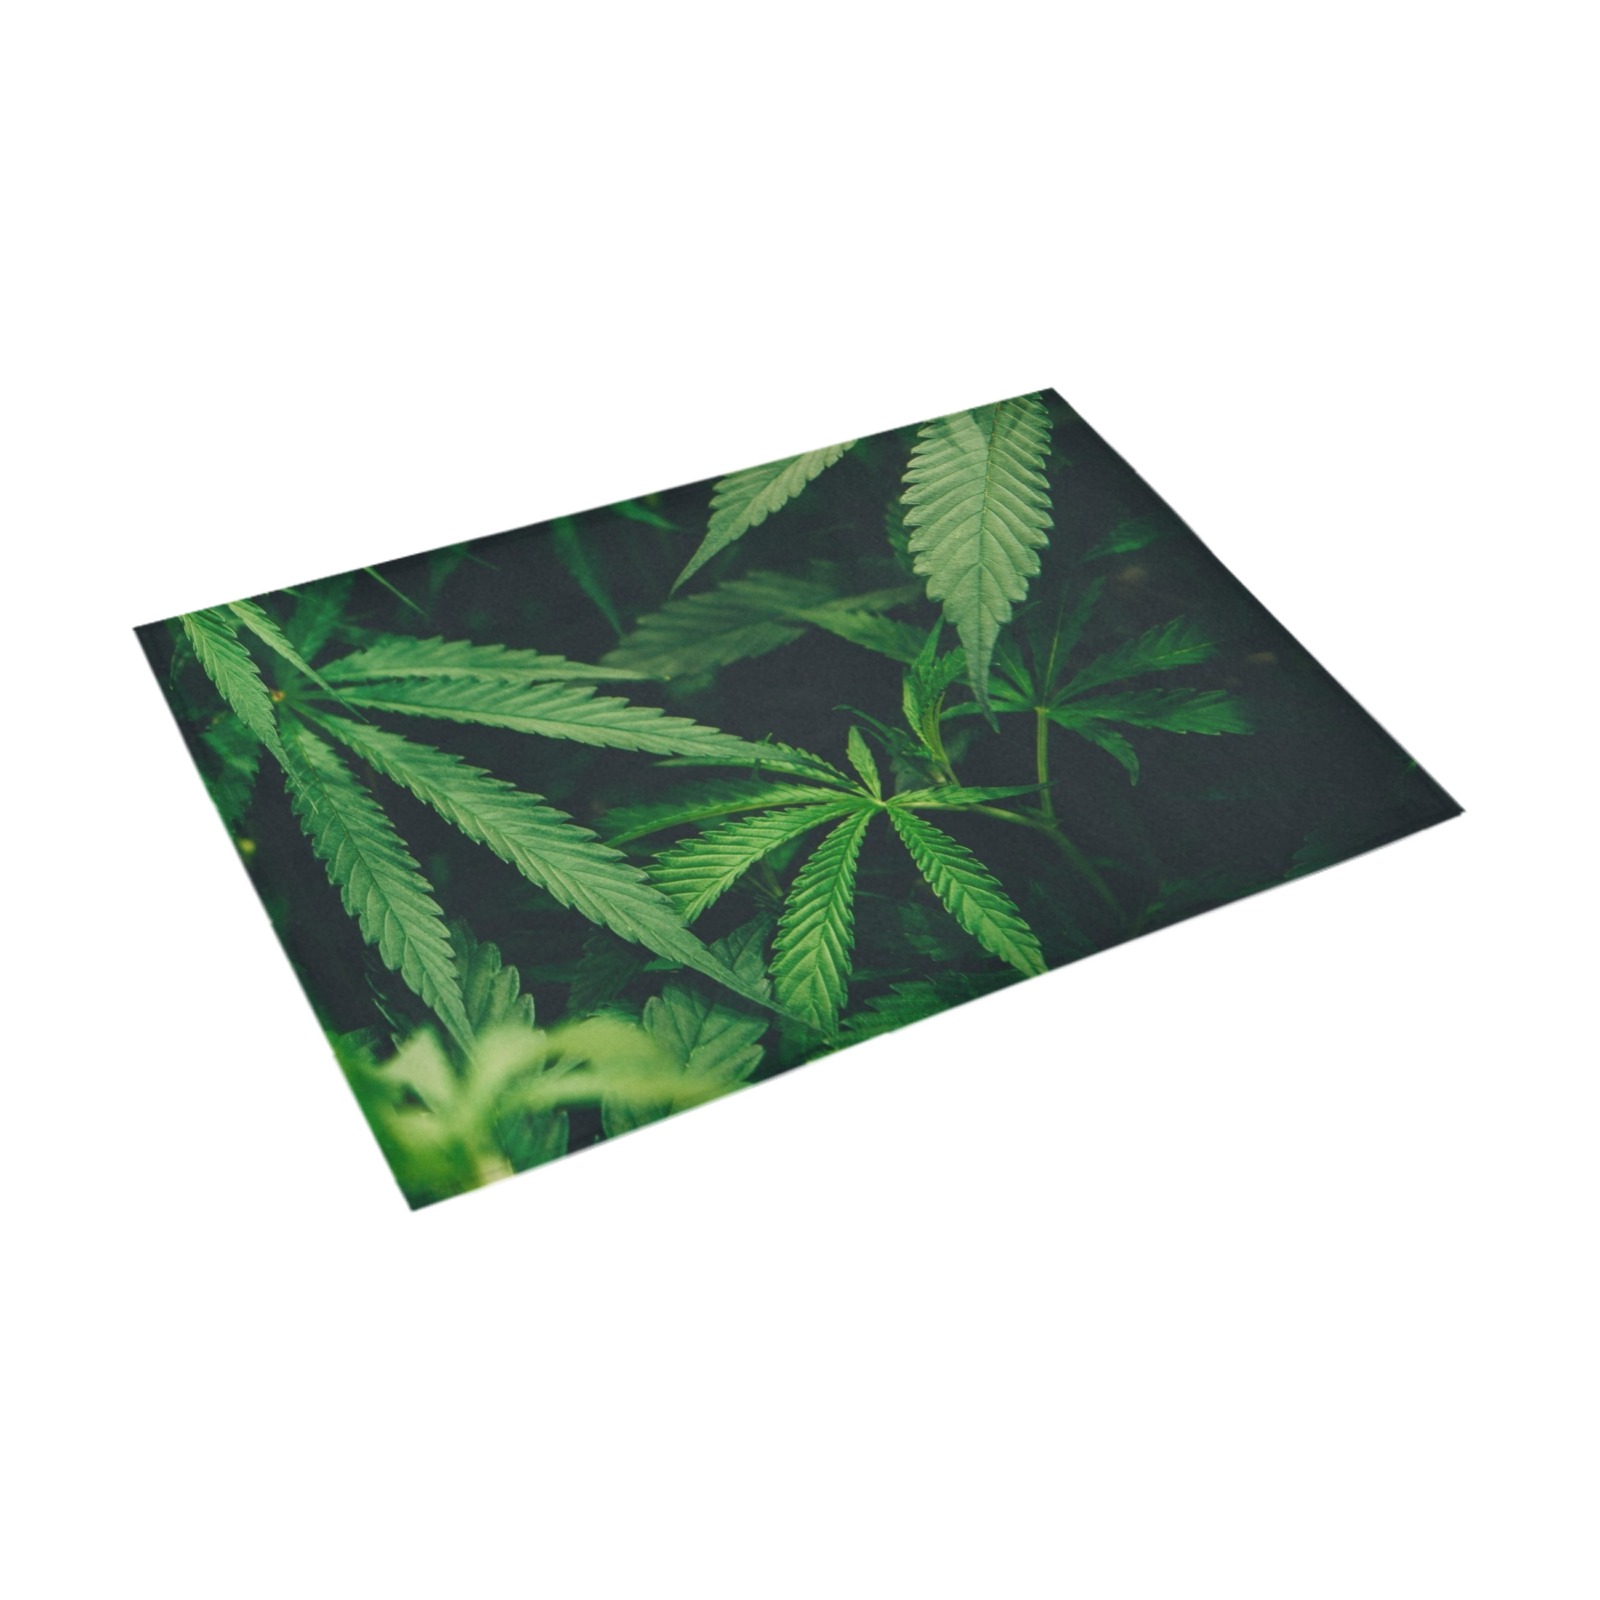 Greenery Azalea Doormat 30" x 18" (Sponge Material)